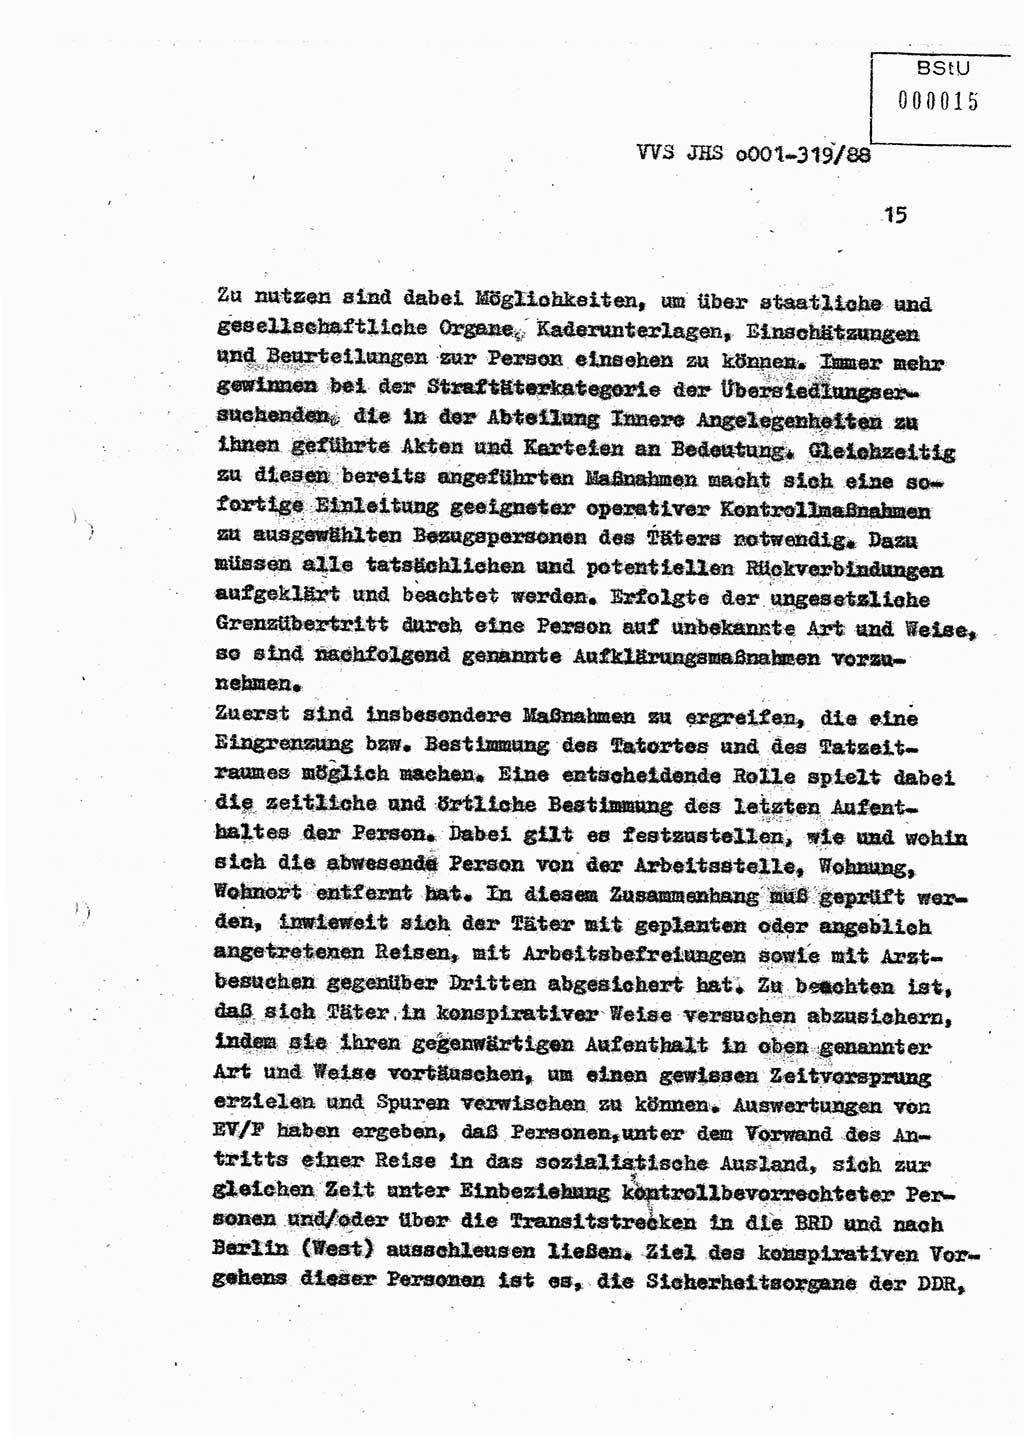 Diplomarbeit Offiziersschüler Holger Zirnstein (HA Ⅸ/9), Ministerium für Staatssicherheit (MfS) [Deutsche Demokratische Republik (DDR)], Juristische Hochschule (JHS), Vertrauliche Verschlußsache (VVS) o001-319/88, Potsdam 1988, Blatt 15 (Dipl.-Arb. MfS DDR JHS VVS o001-319/88 1988, Bl. 15)